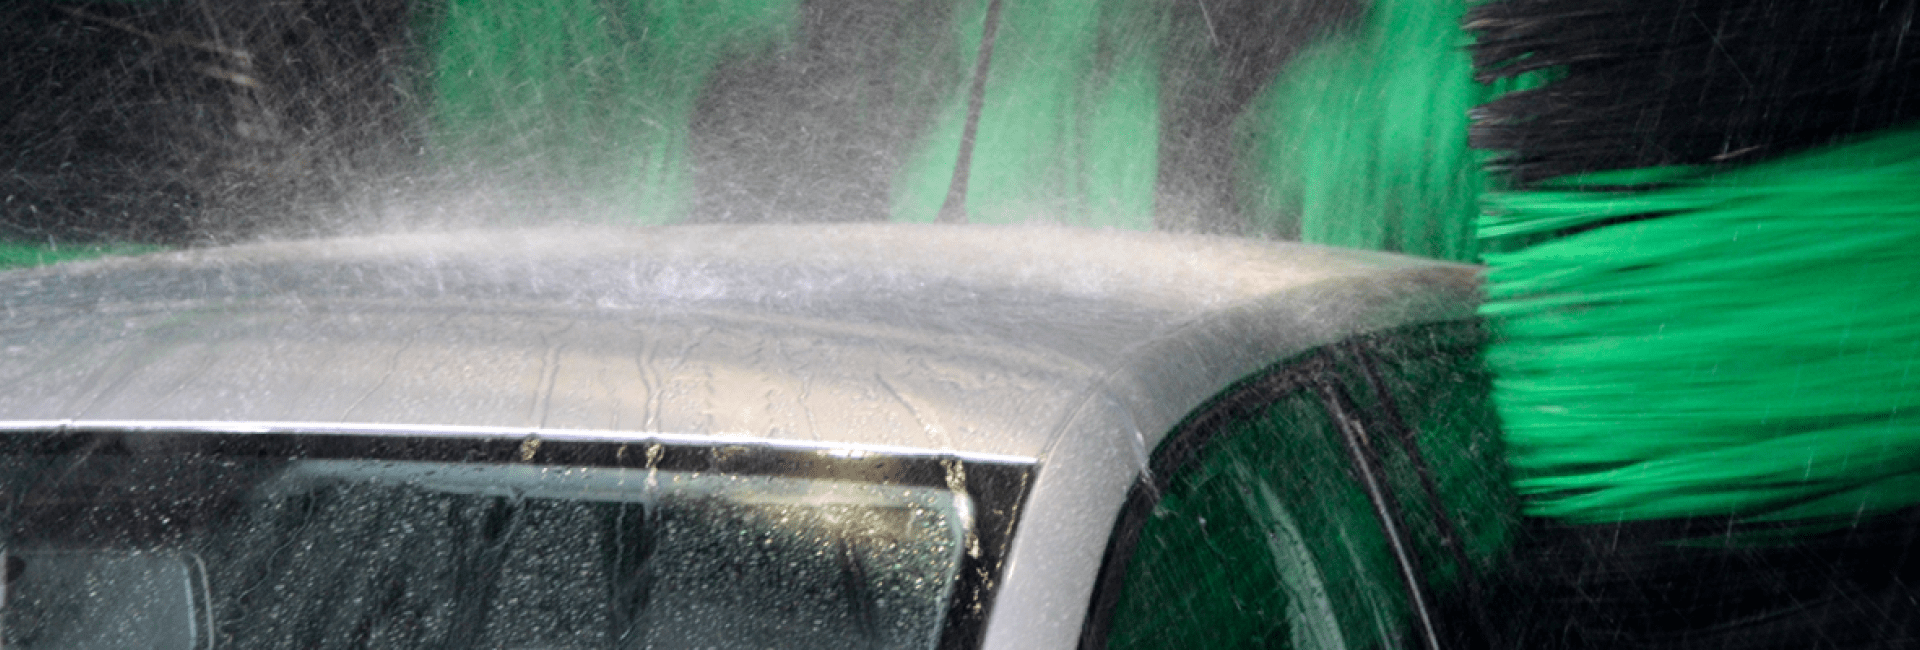 De bovenkant van een auto waar het water als hevige regen op neerkomt omdat het wordt gewassen door de hogedruksproeiers van een roll over carwash